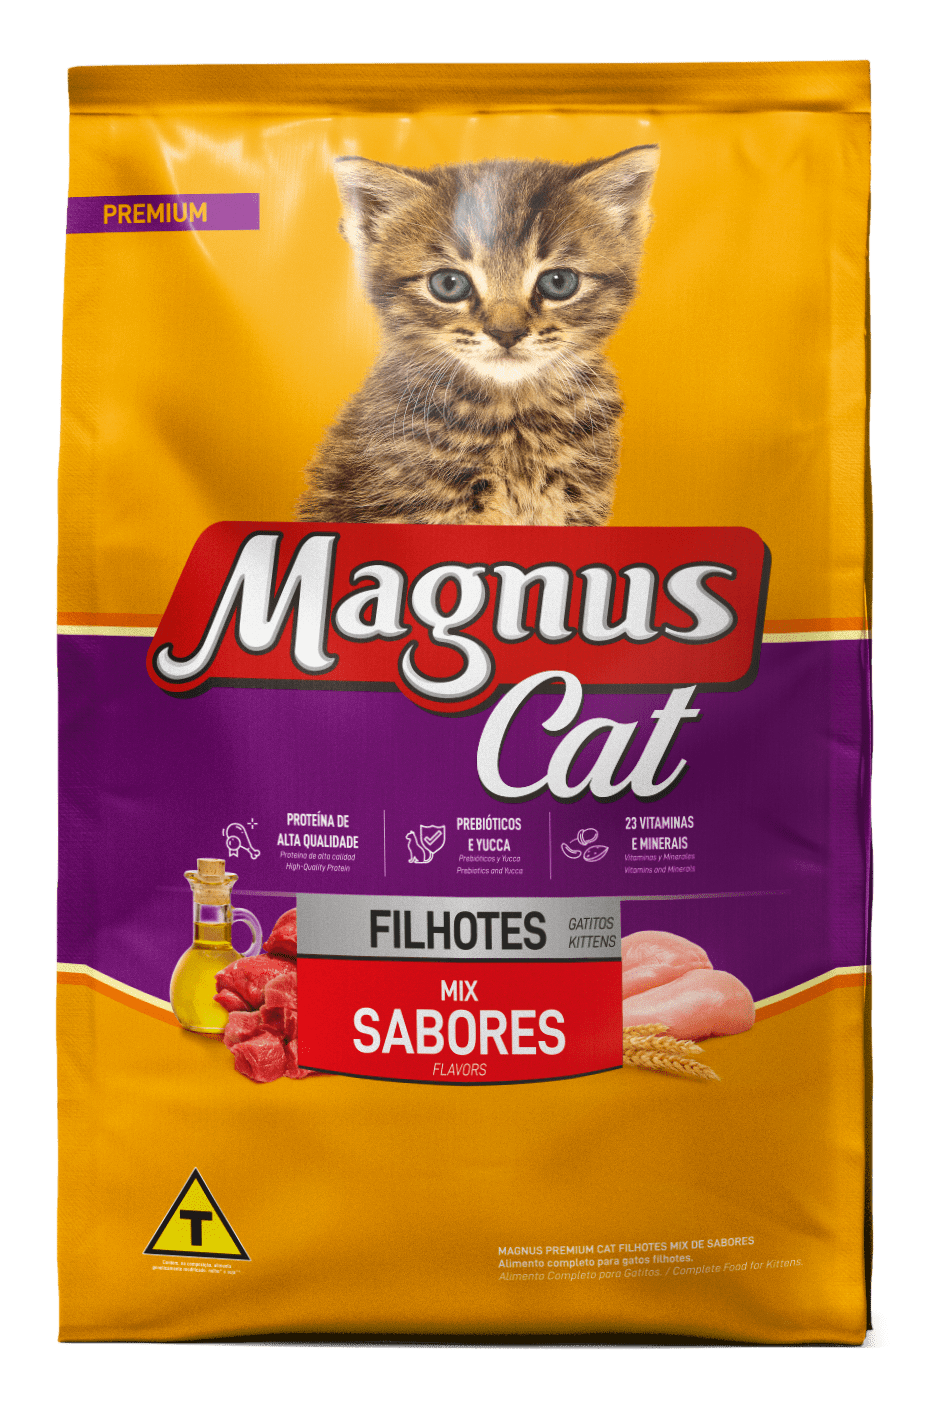 Magnus Premium Kittens – Mix Flavors